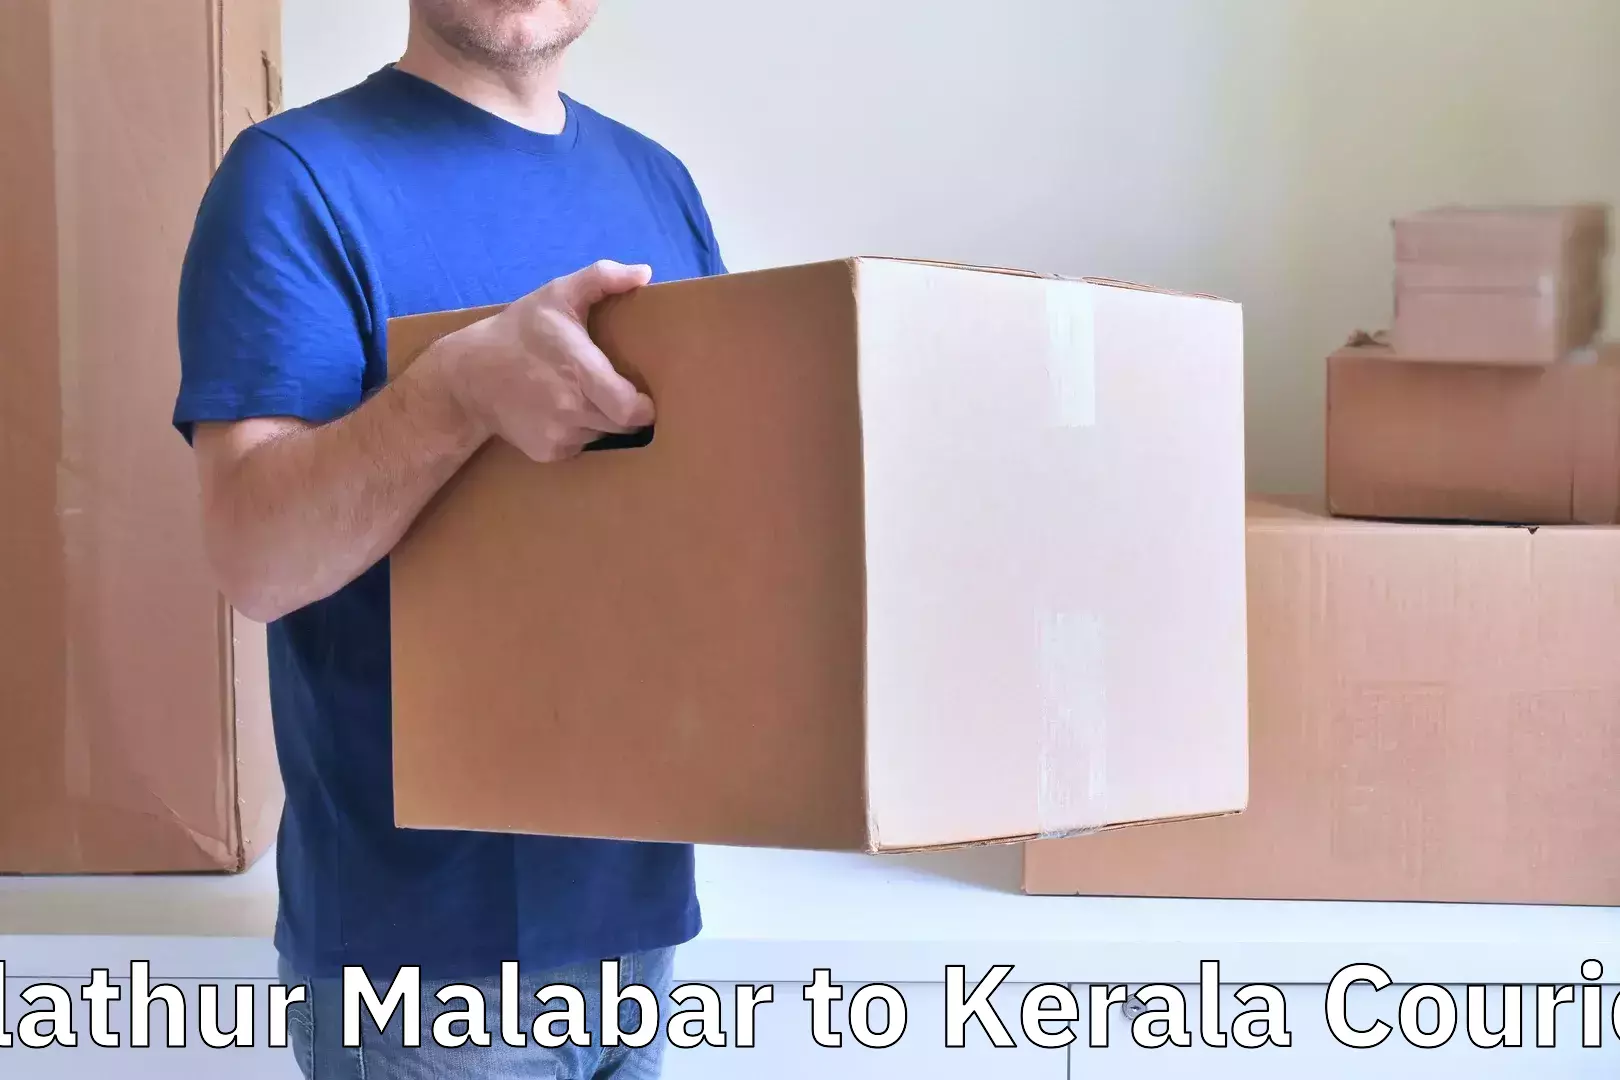 Baggage shipping service Alathur Malabar to Kuttiady